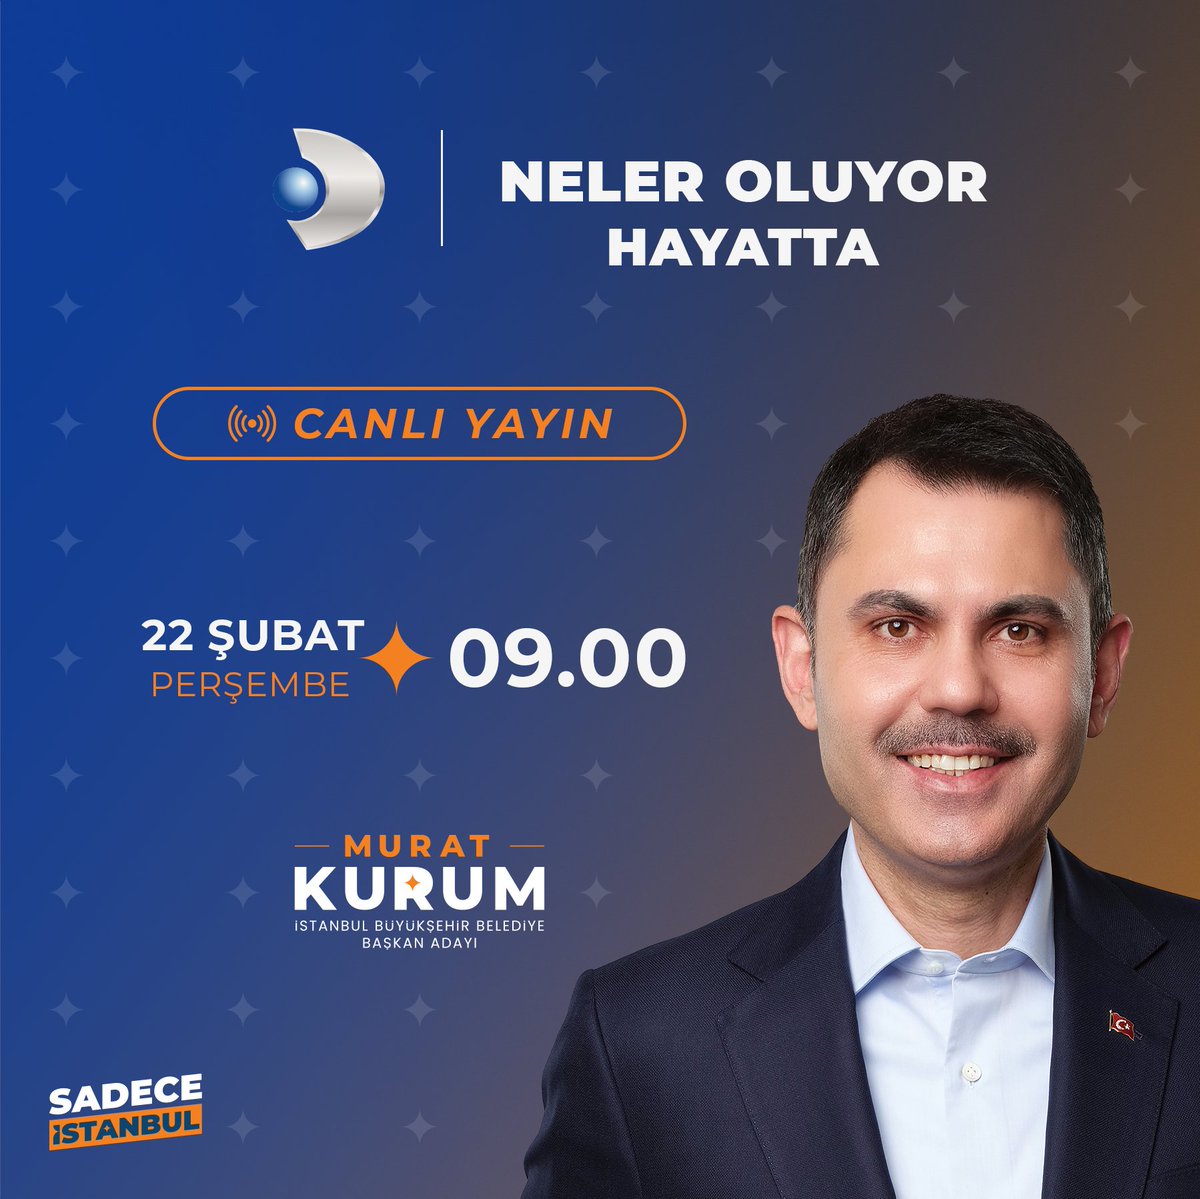 09.00'da Kanal D ekranlarında İstanbul’umuzun geleceğini konuşacağız. Sizleri de ekran başına bekliyorum.